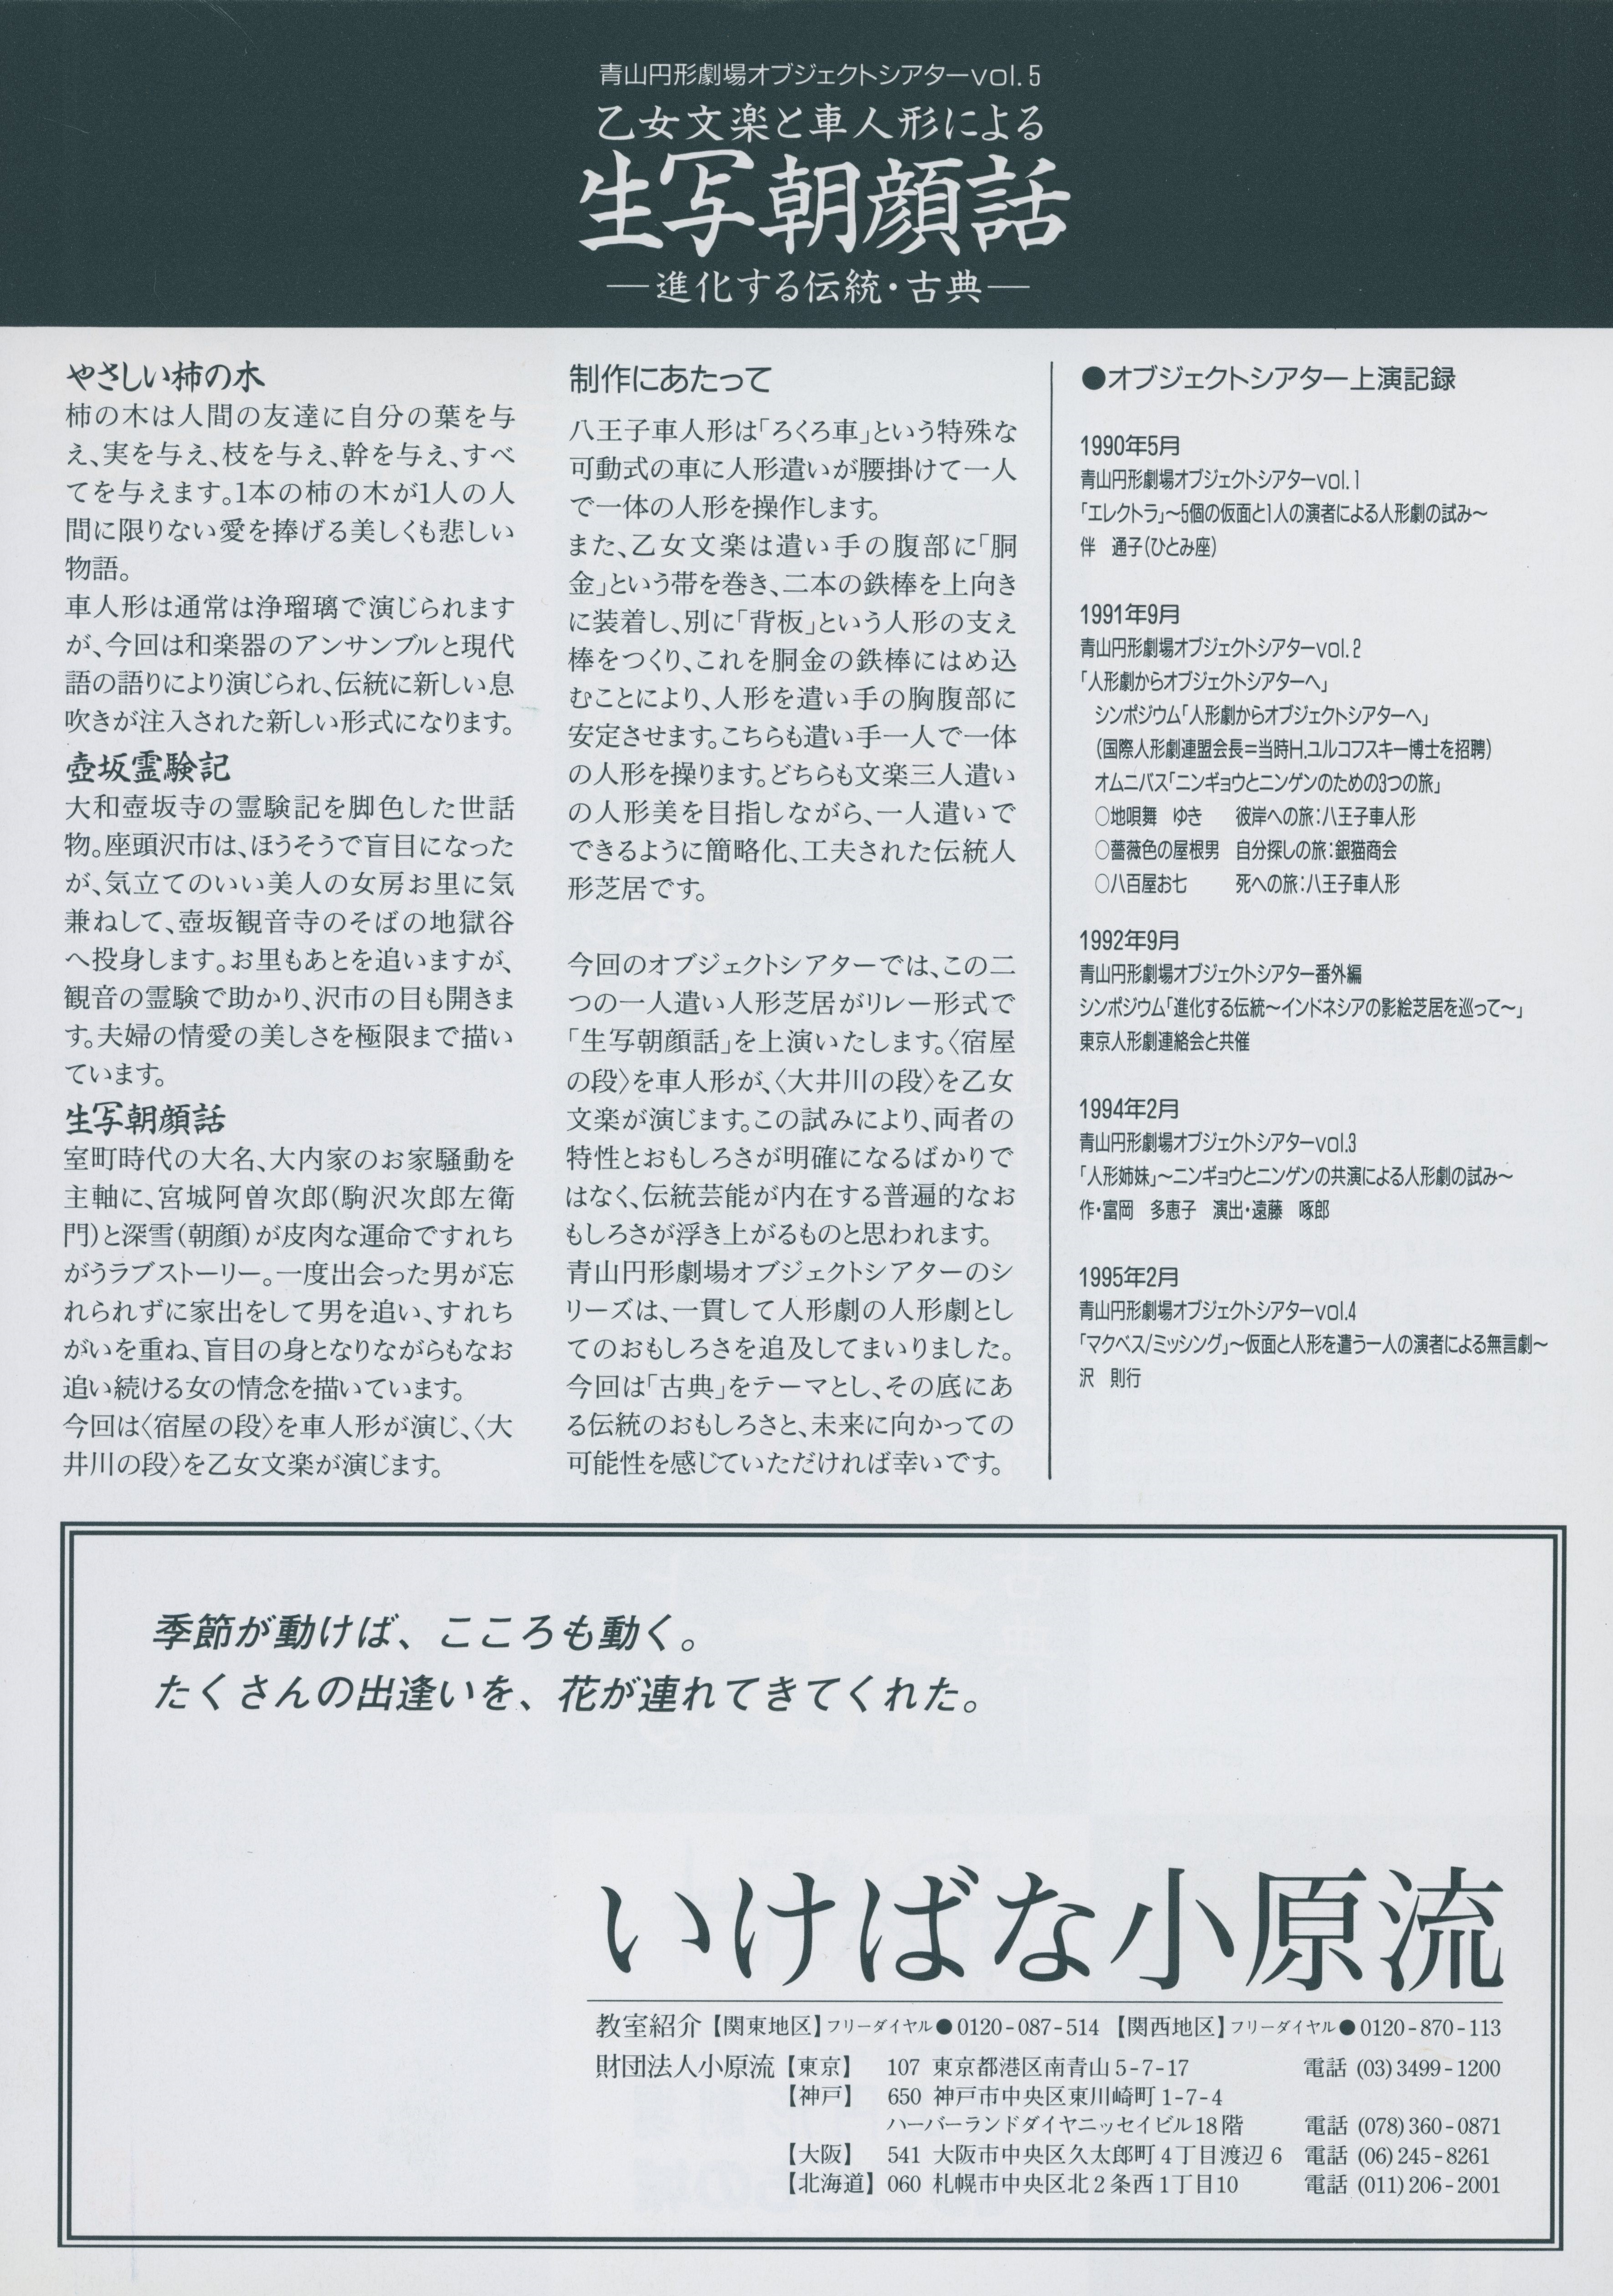 青山円形劇場オブジェクトシアターVol.5「乙女文楽と車人形による生写朝顔話 ―進化する伝統・古典―」